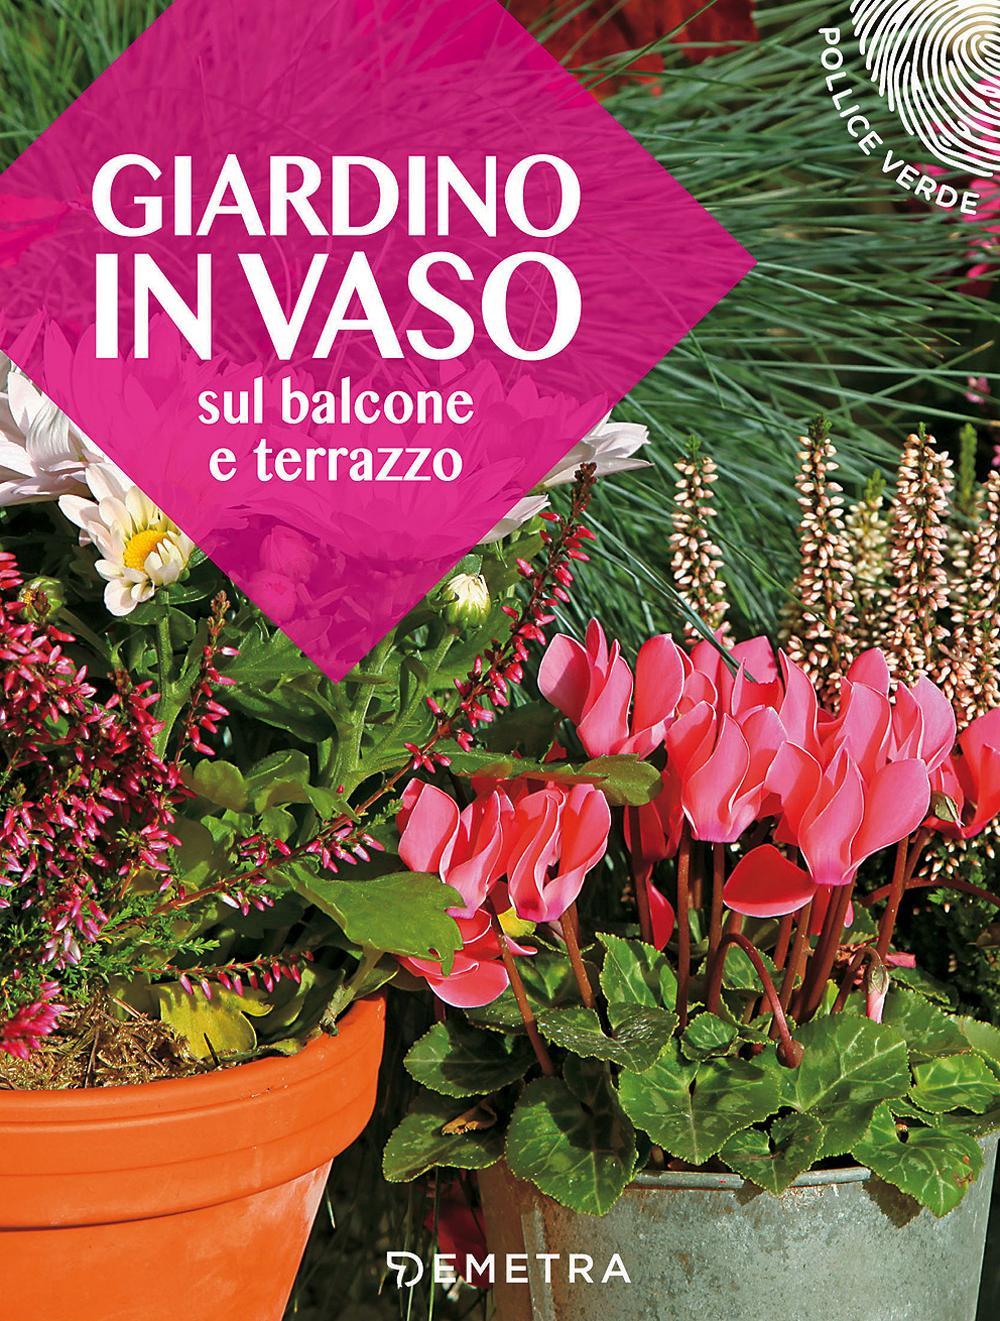 Knjiga Giardino in vaso sul balcone e terrazzo 